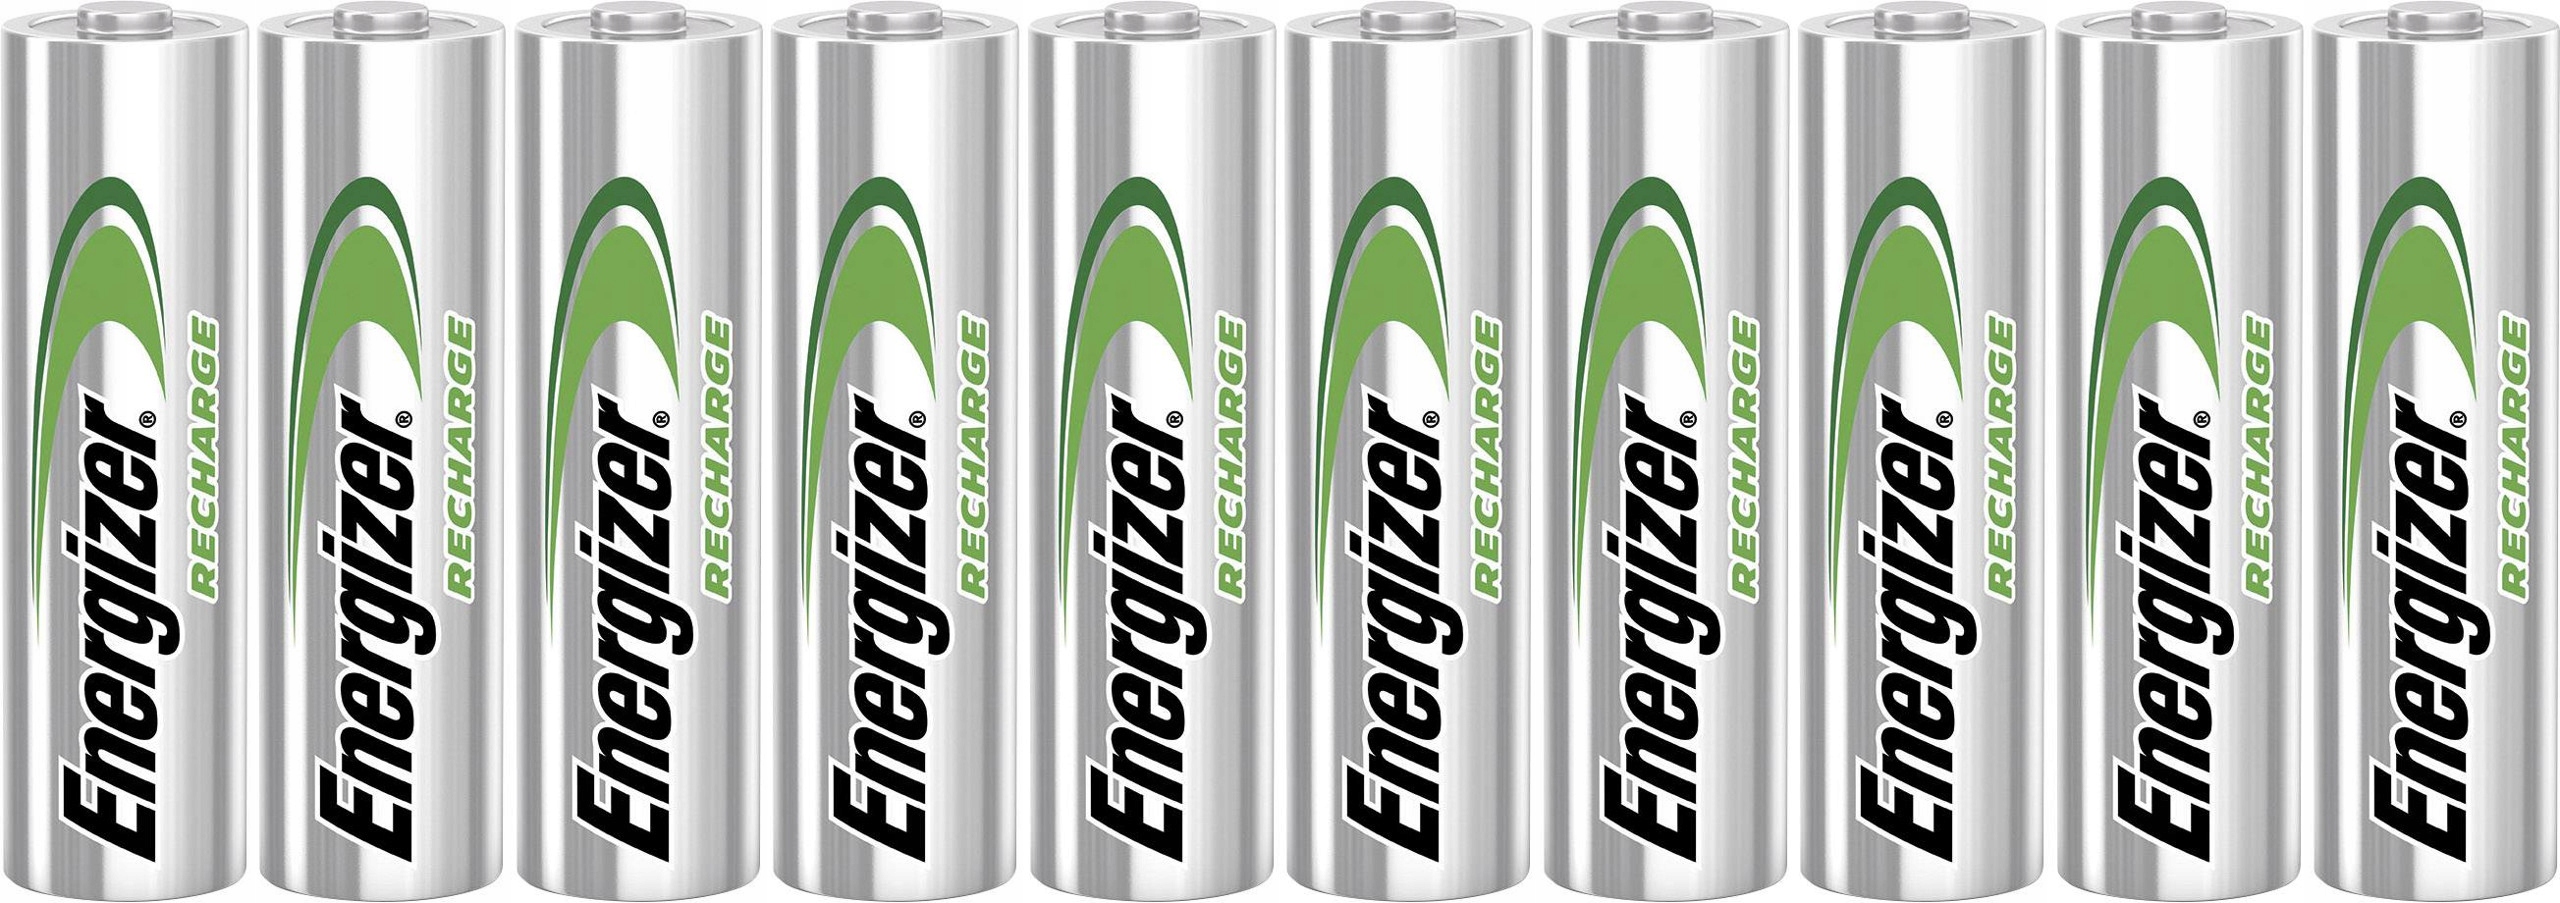 10 батарей ENERGIZER Extreme AA R6 2300mAh